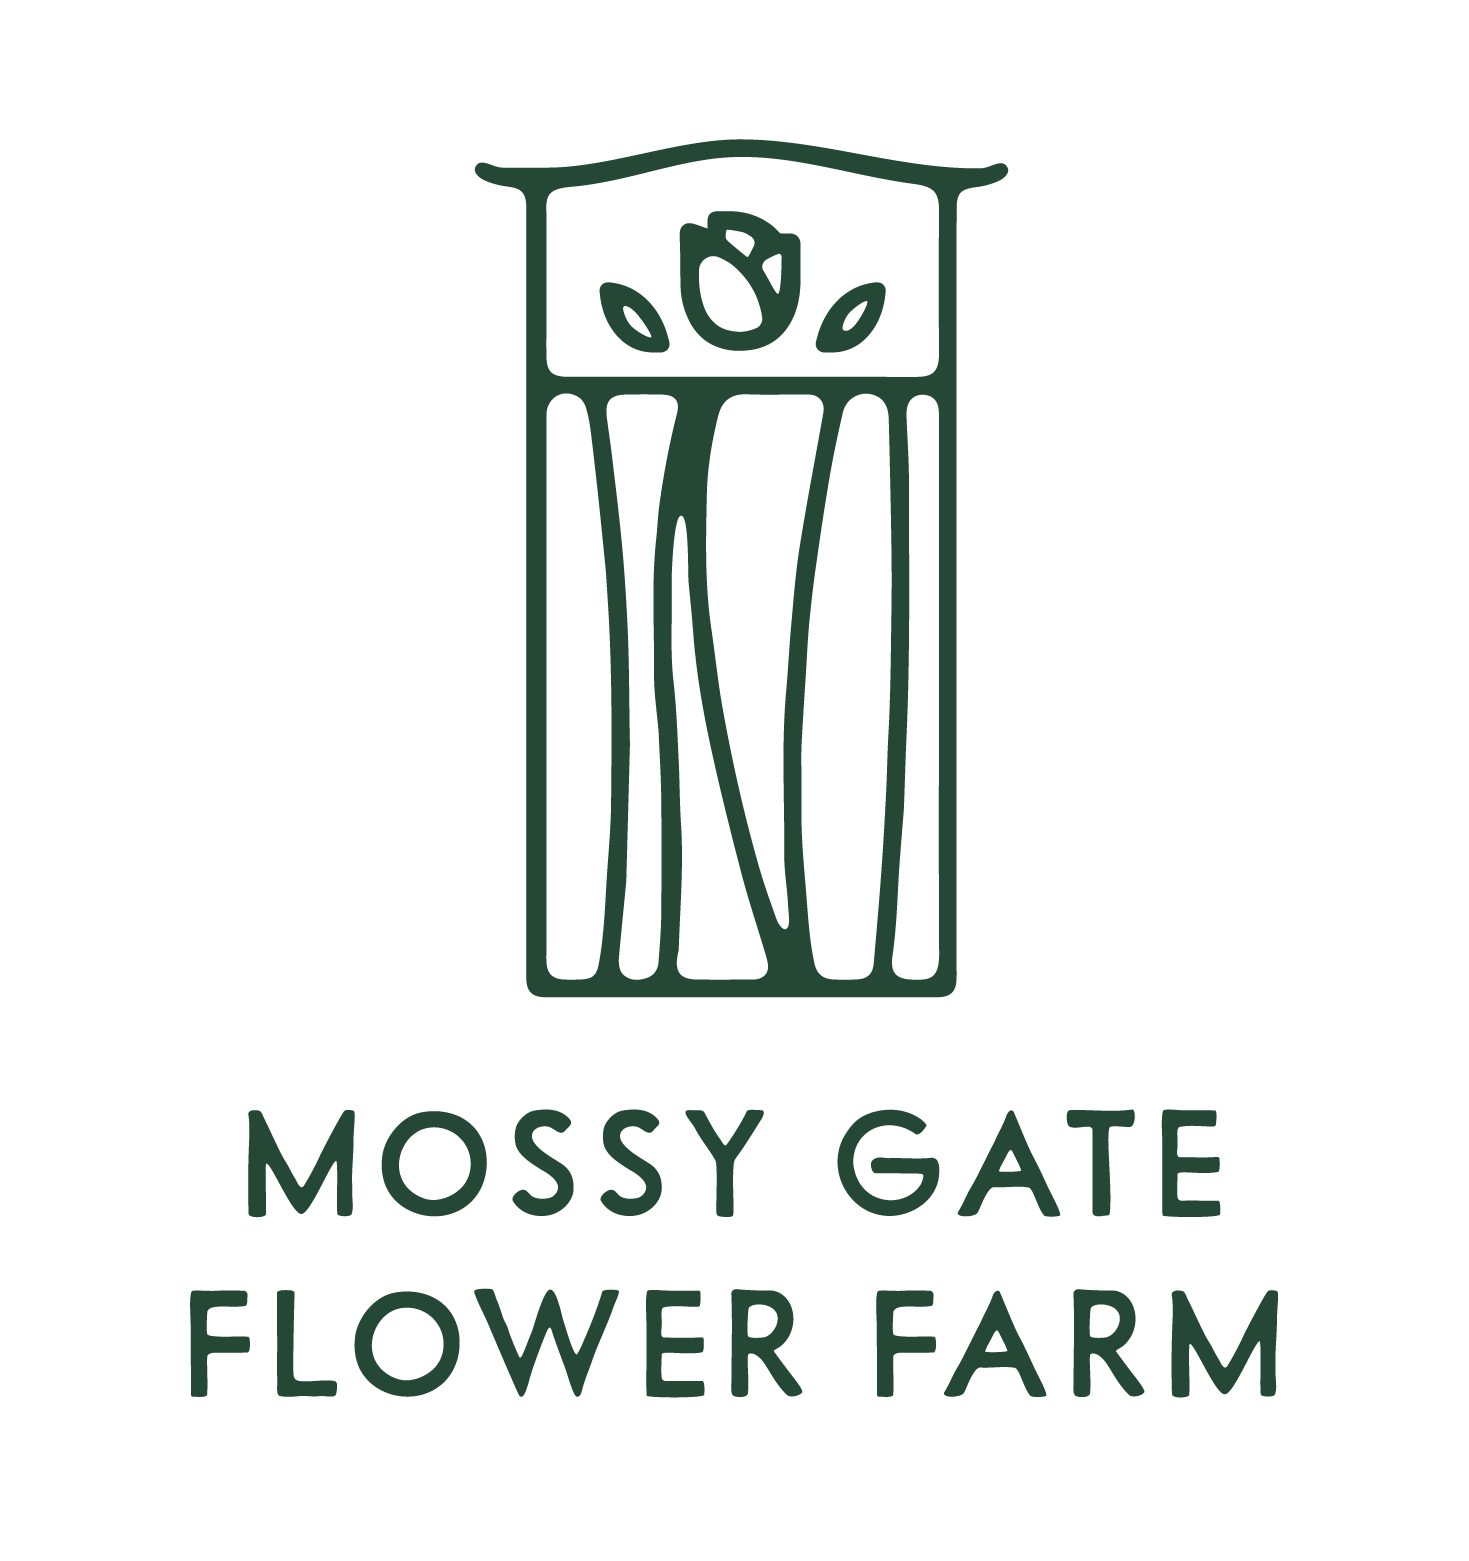 Mossy Gate Flower Farm